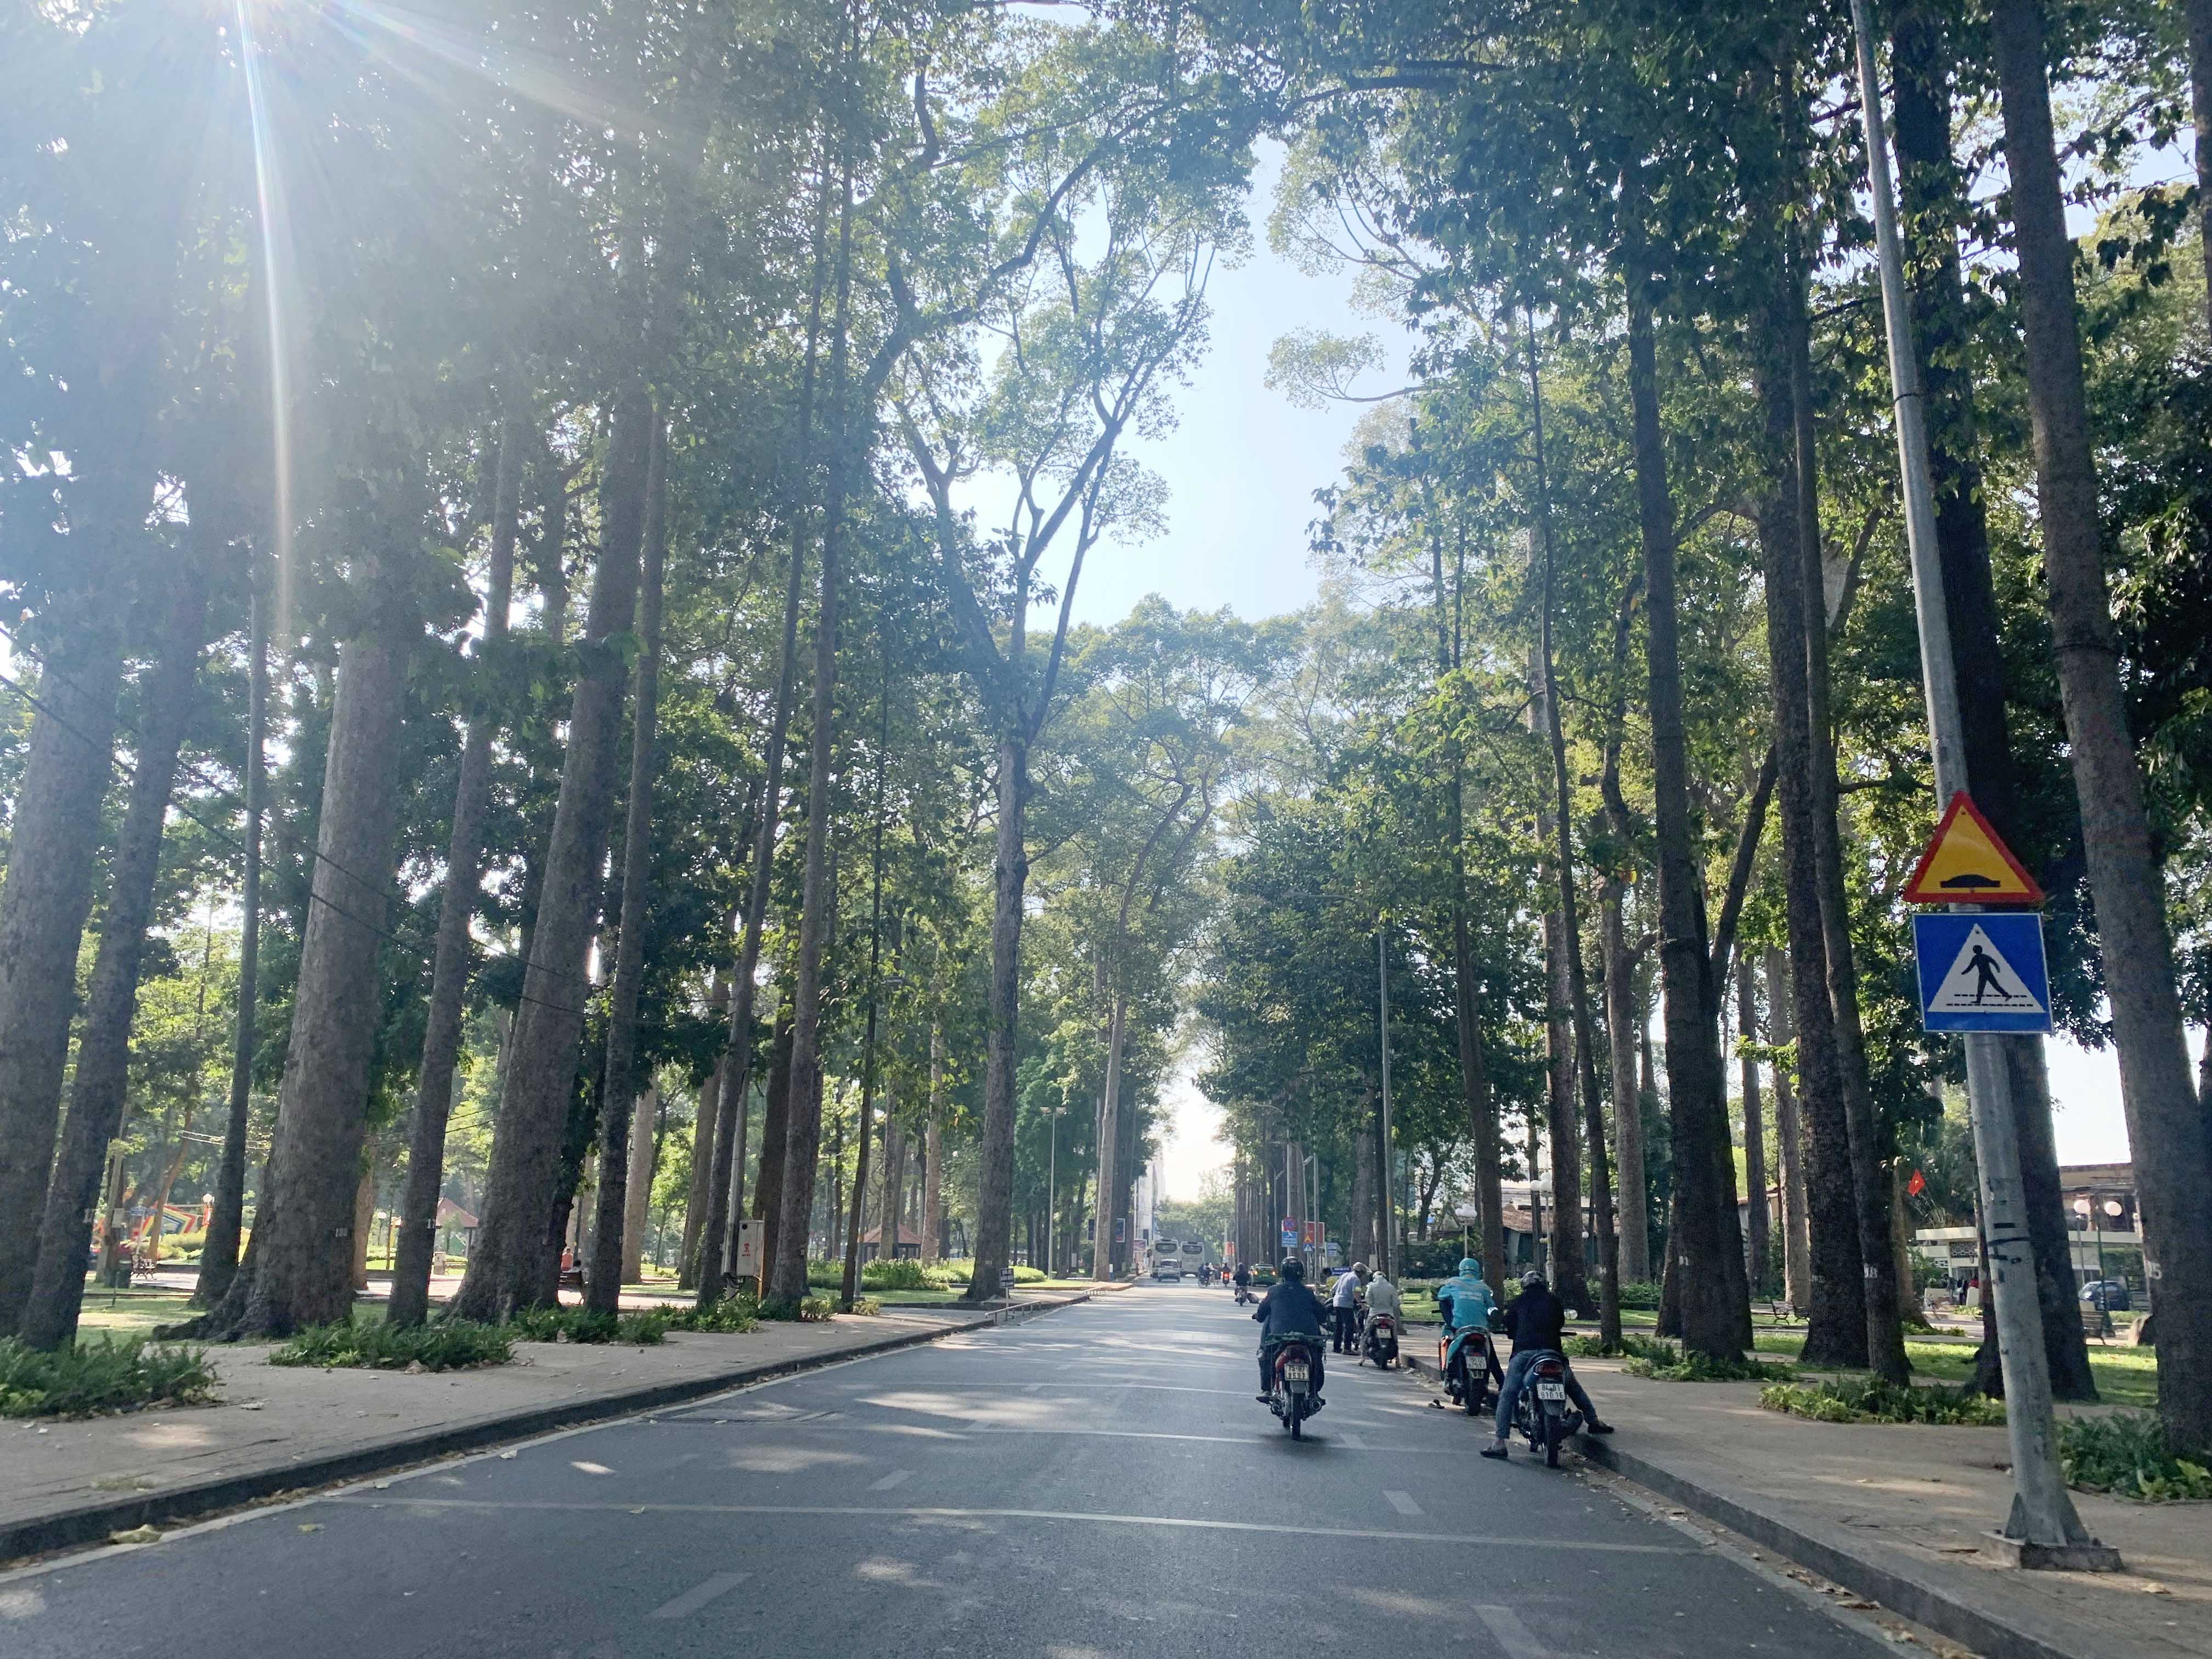 Trải qua quá trình đô thị hoá, TP.HCM vẫn giữ gìn được nhiều con đường rợp bóng cây, được ví như những “báu vật xanh” của thành phố.